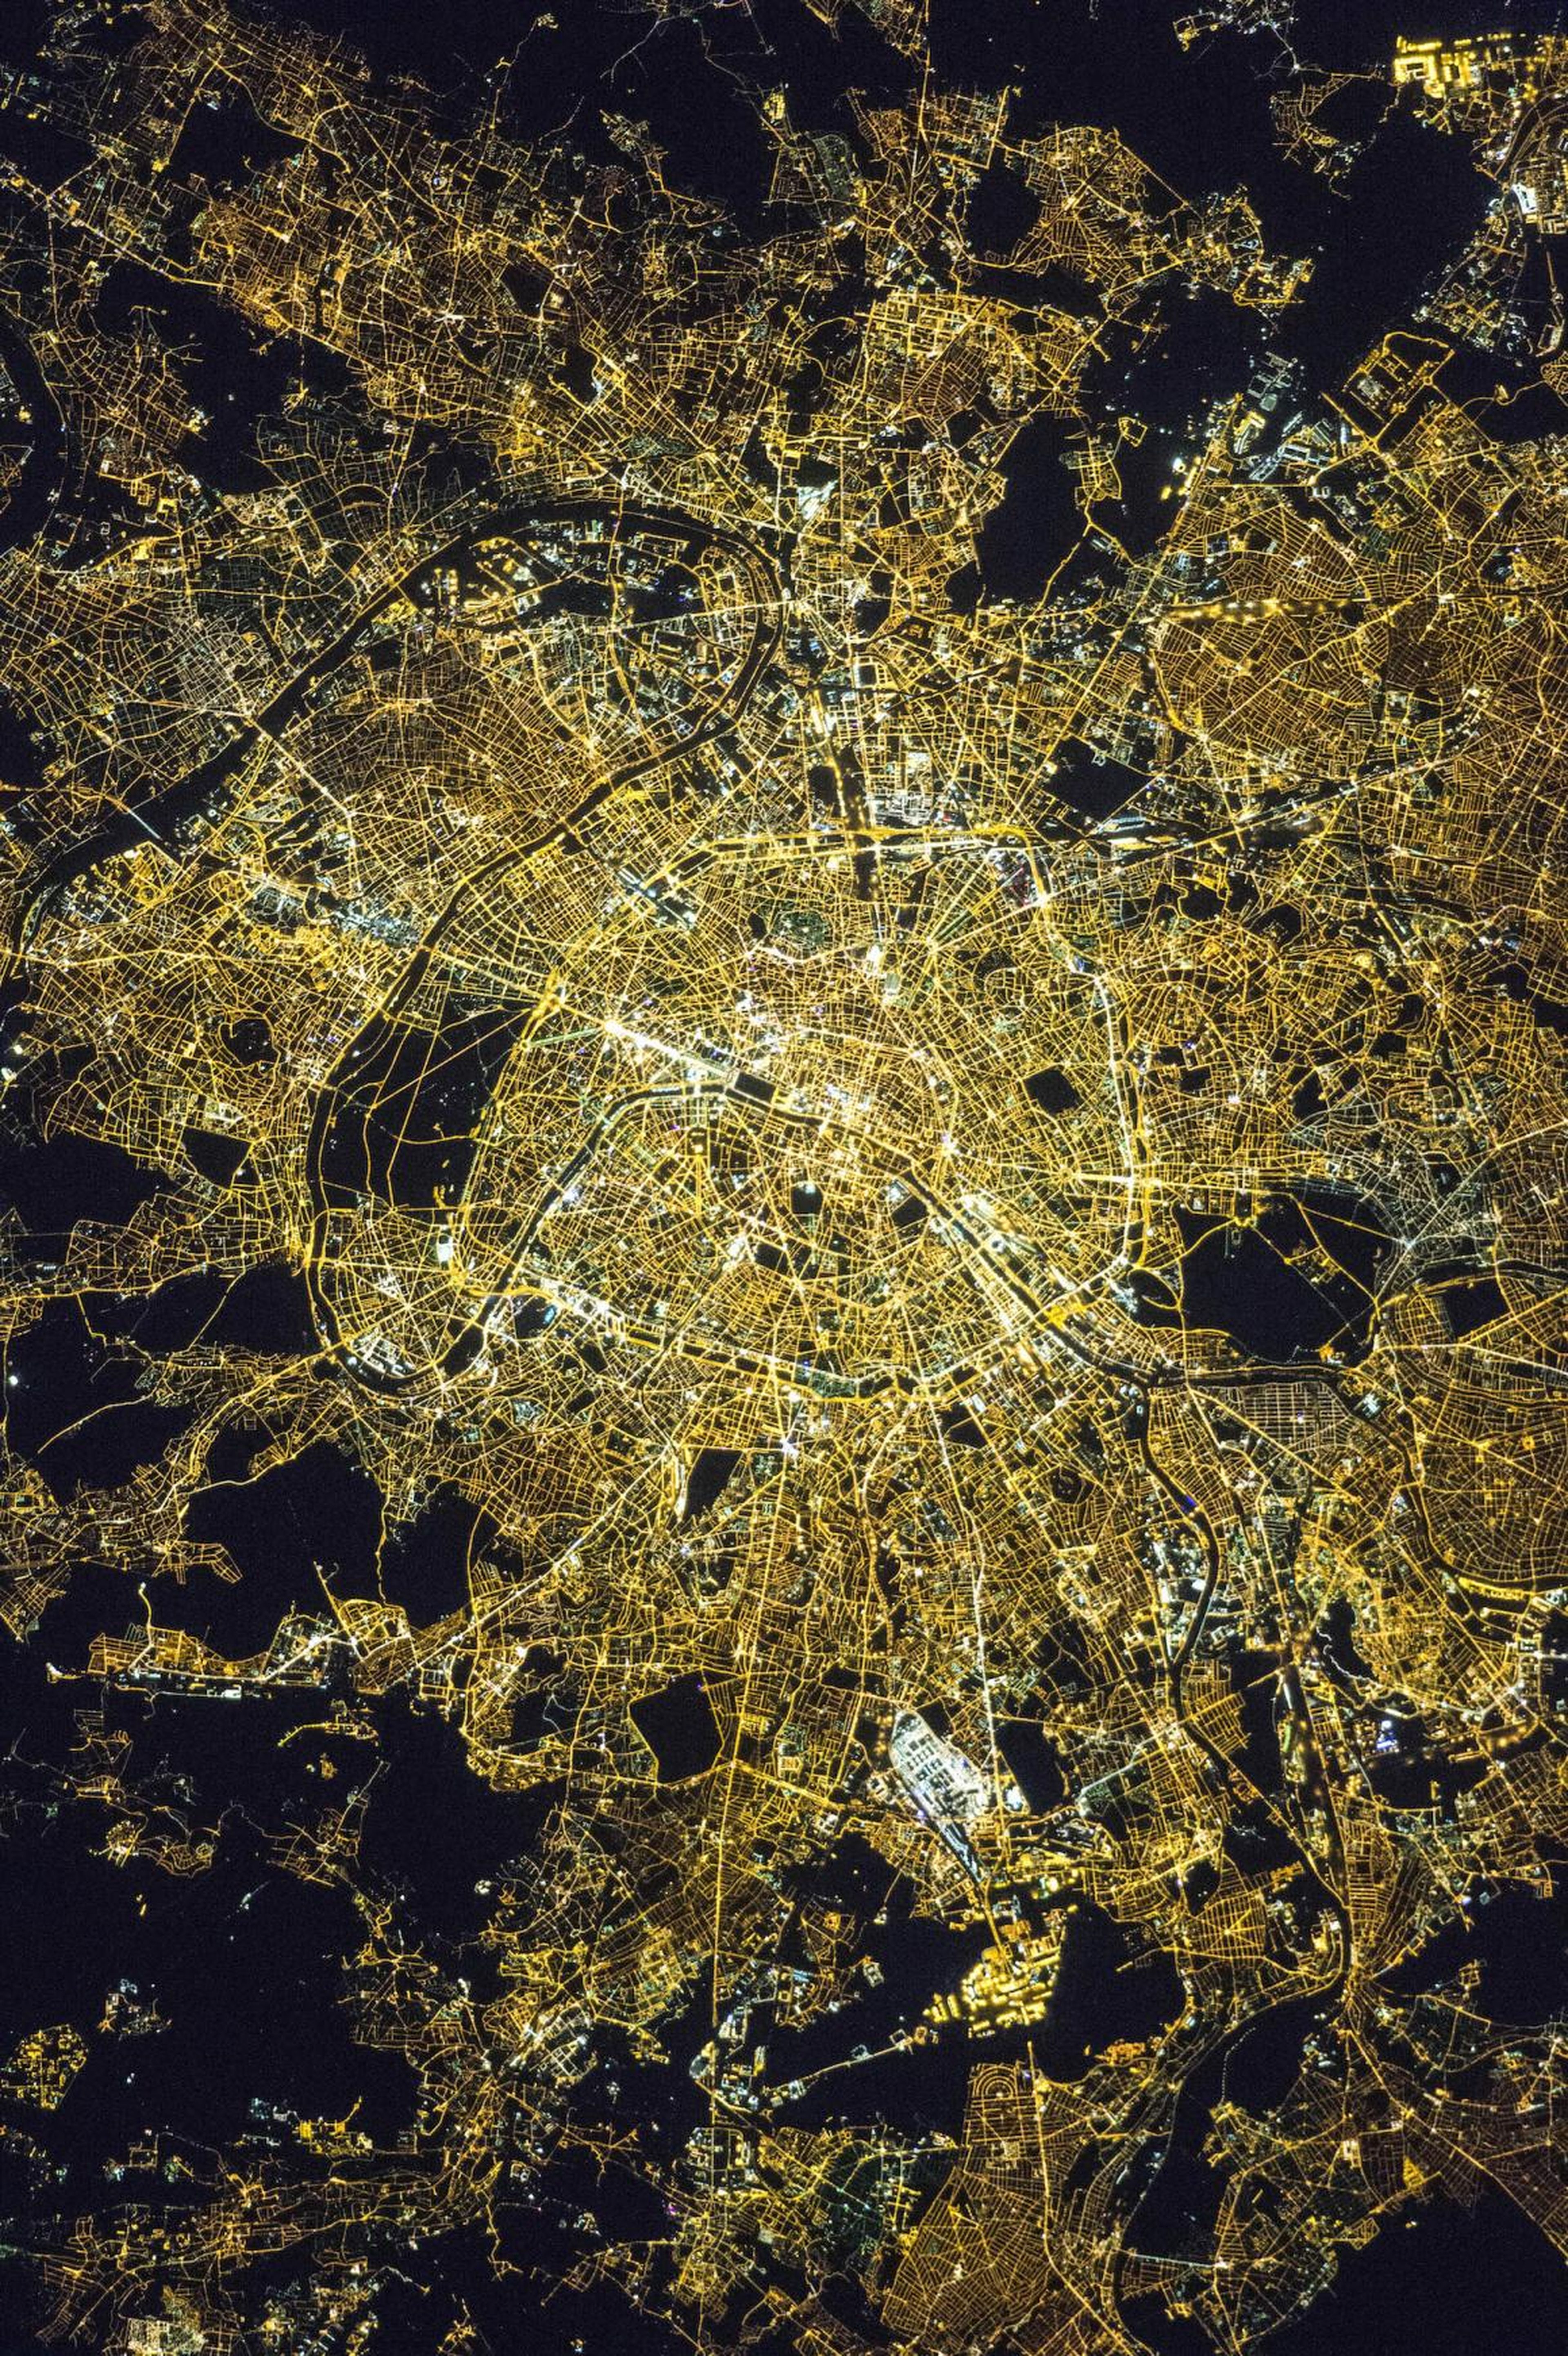 Alrededor de la medianoche, hora local del 8 de abril de 2015, los astronautas a bordo de la Estación Espacial Internacional tomaron esta fotografía de París.